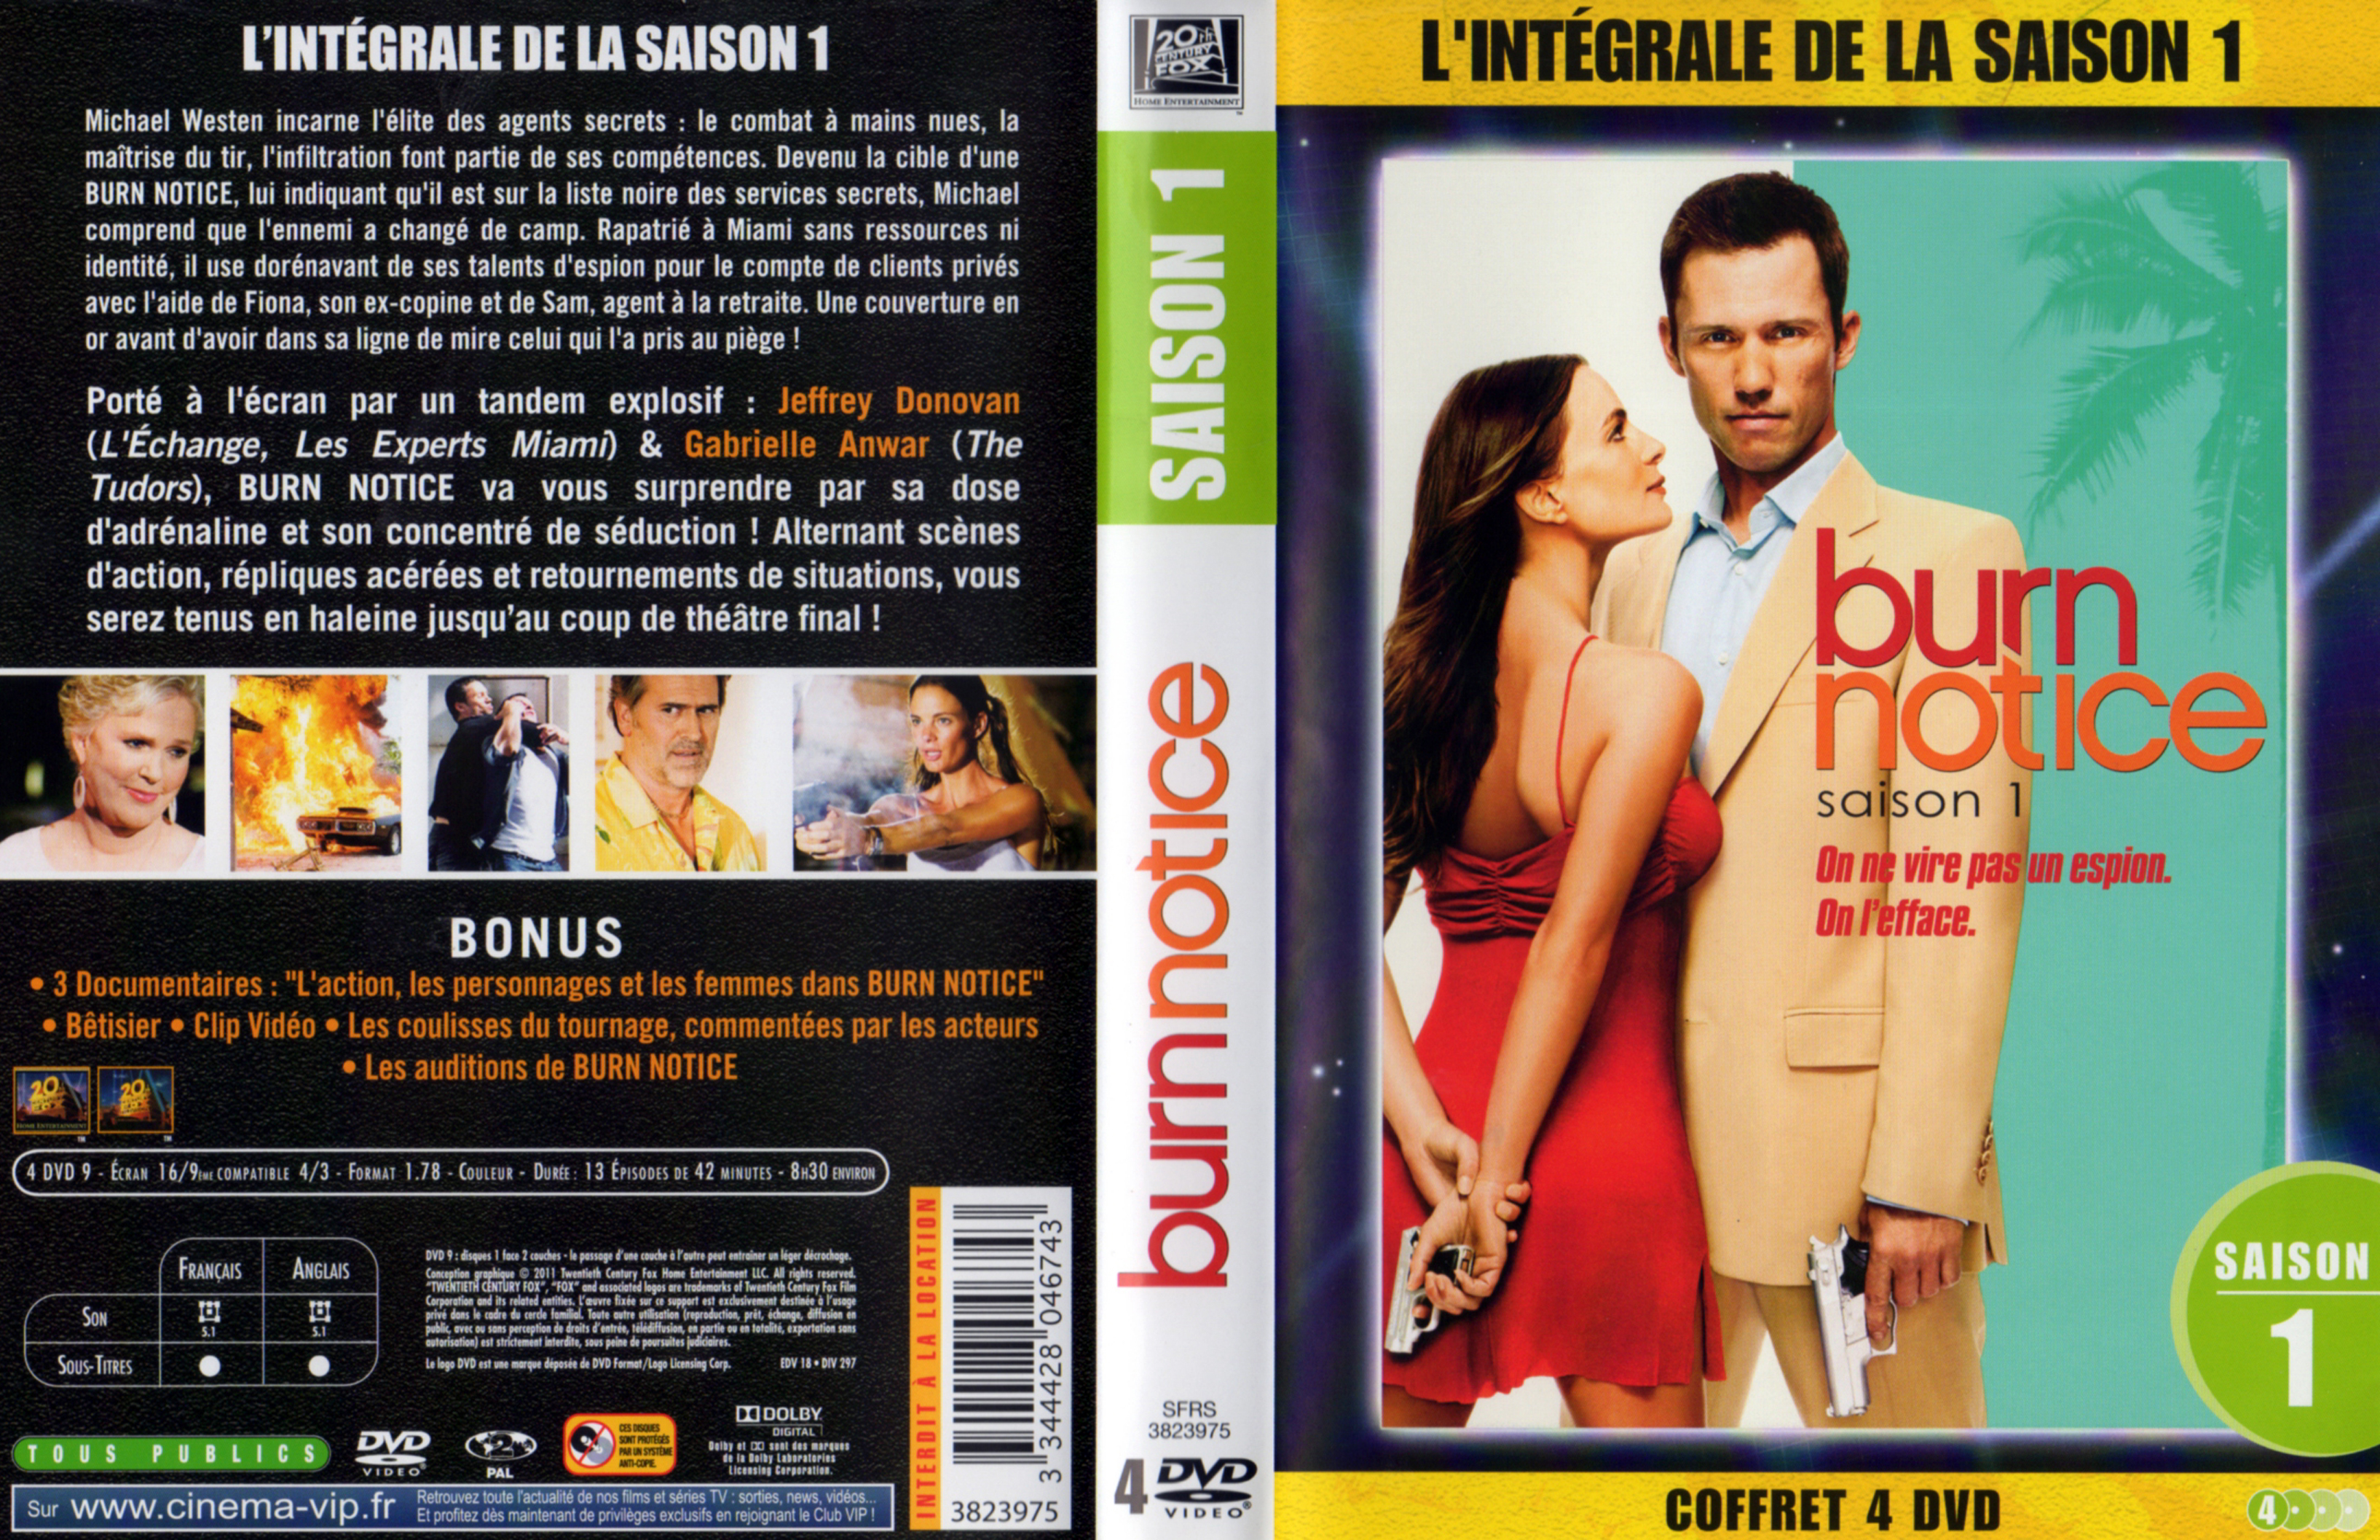 Jaquette DVD Burn notice saison 1 COFFRET